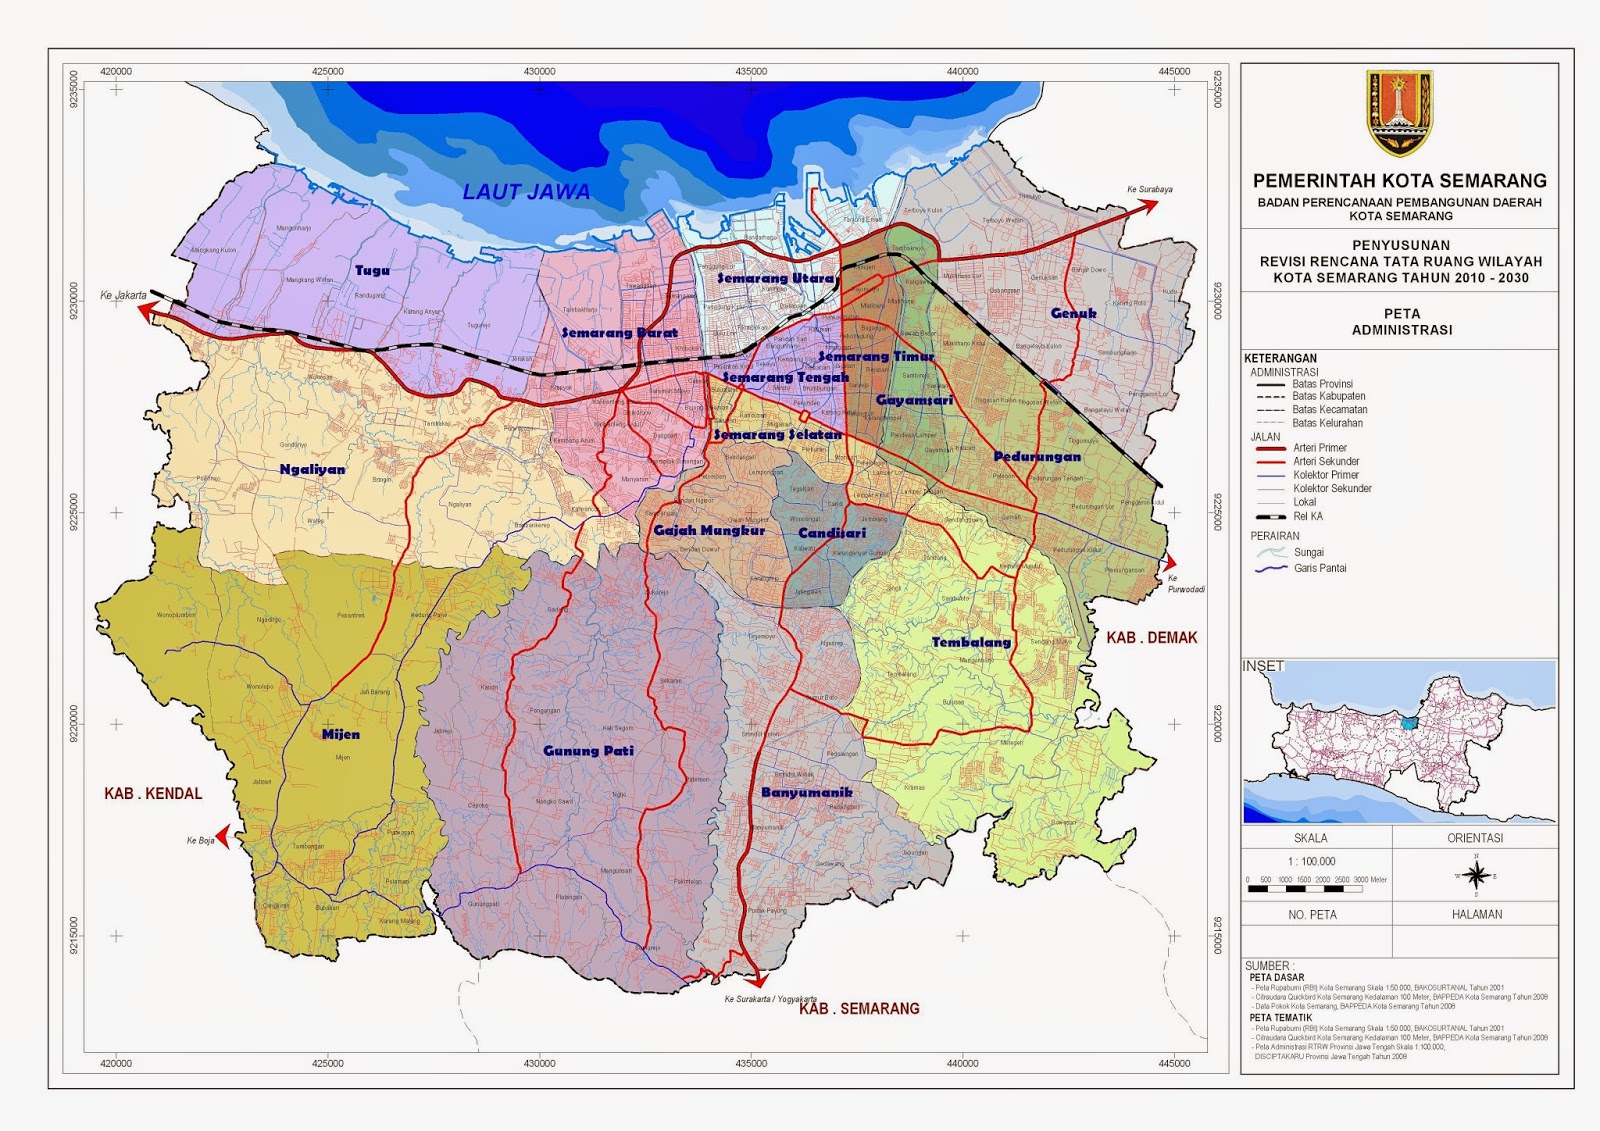 Peta Administrasi Kota Semarang ~ Pamboedi File's